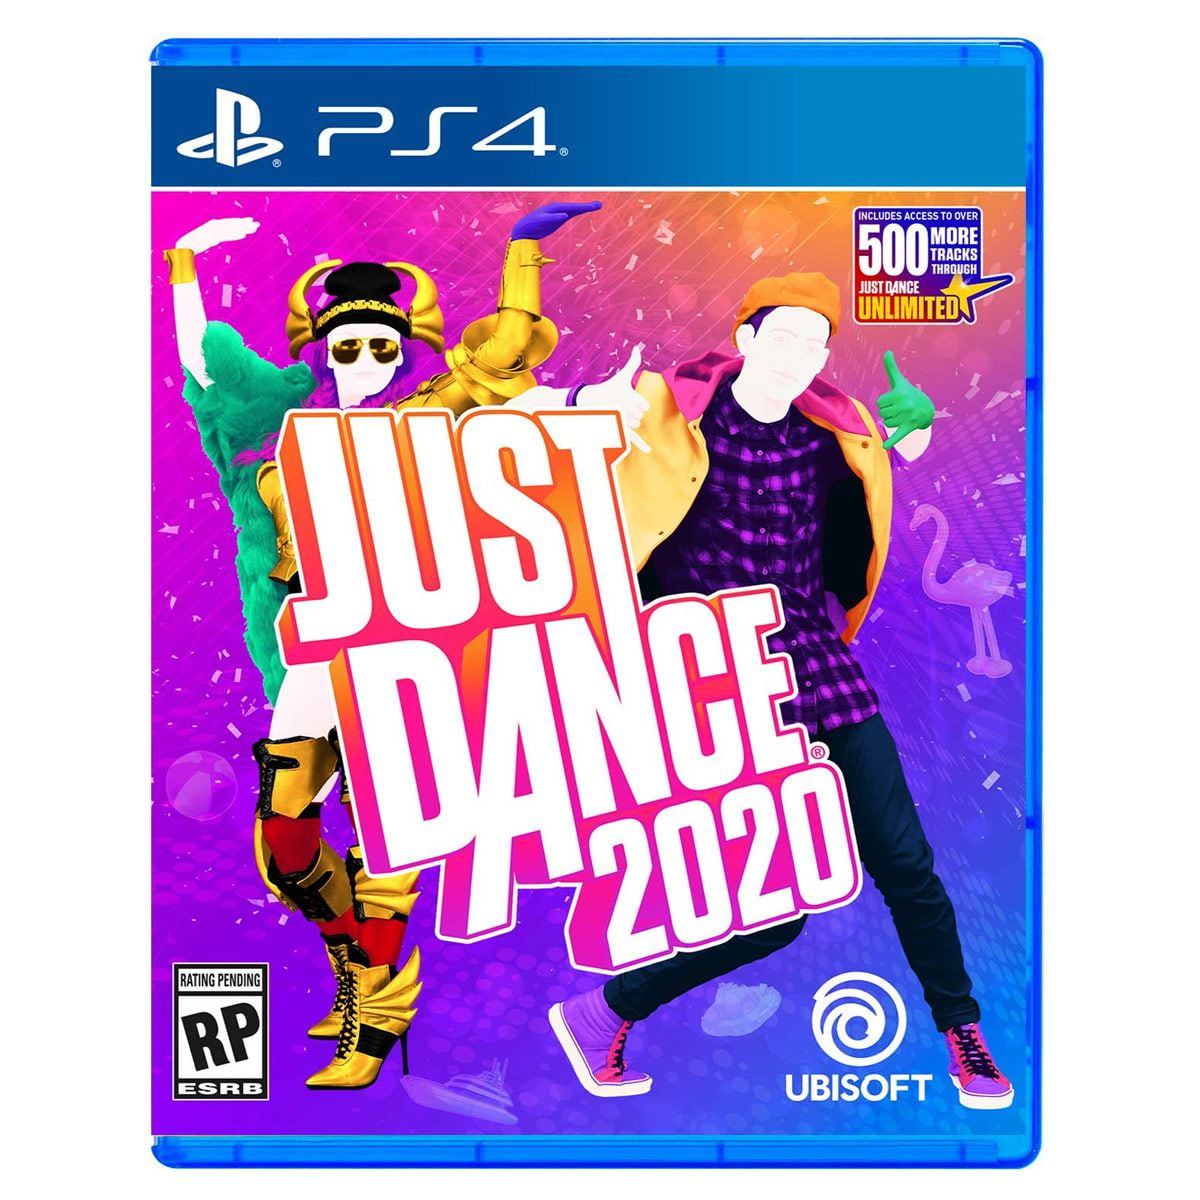 Ananiver kapok Indsigtsfuld Ubisoft Just Dance 2020 Video Game For PlayStation 4 - Walmart.com